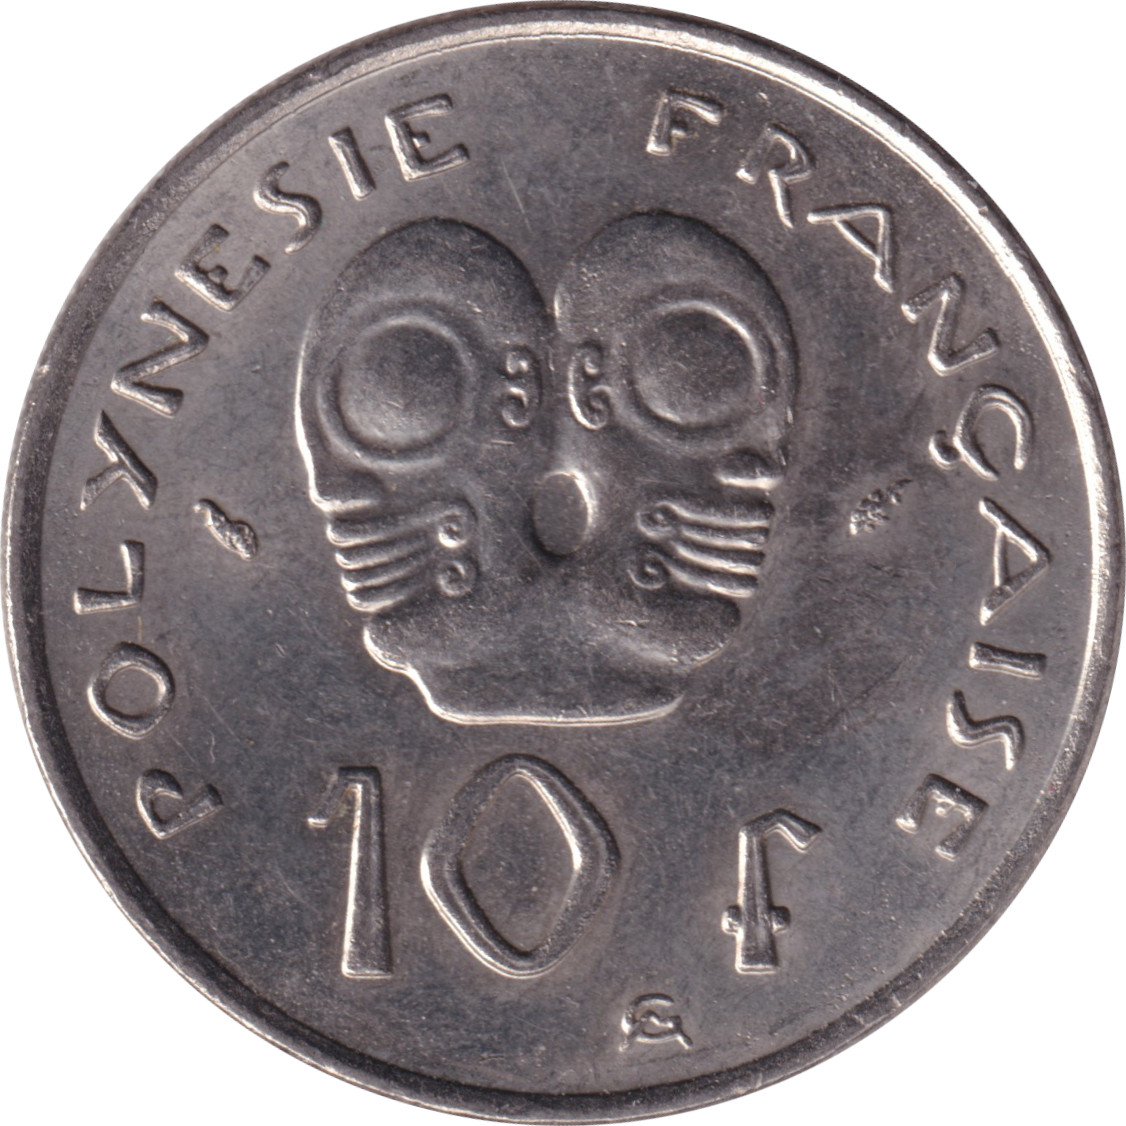 10 francs - Masque